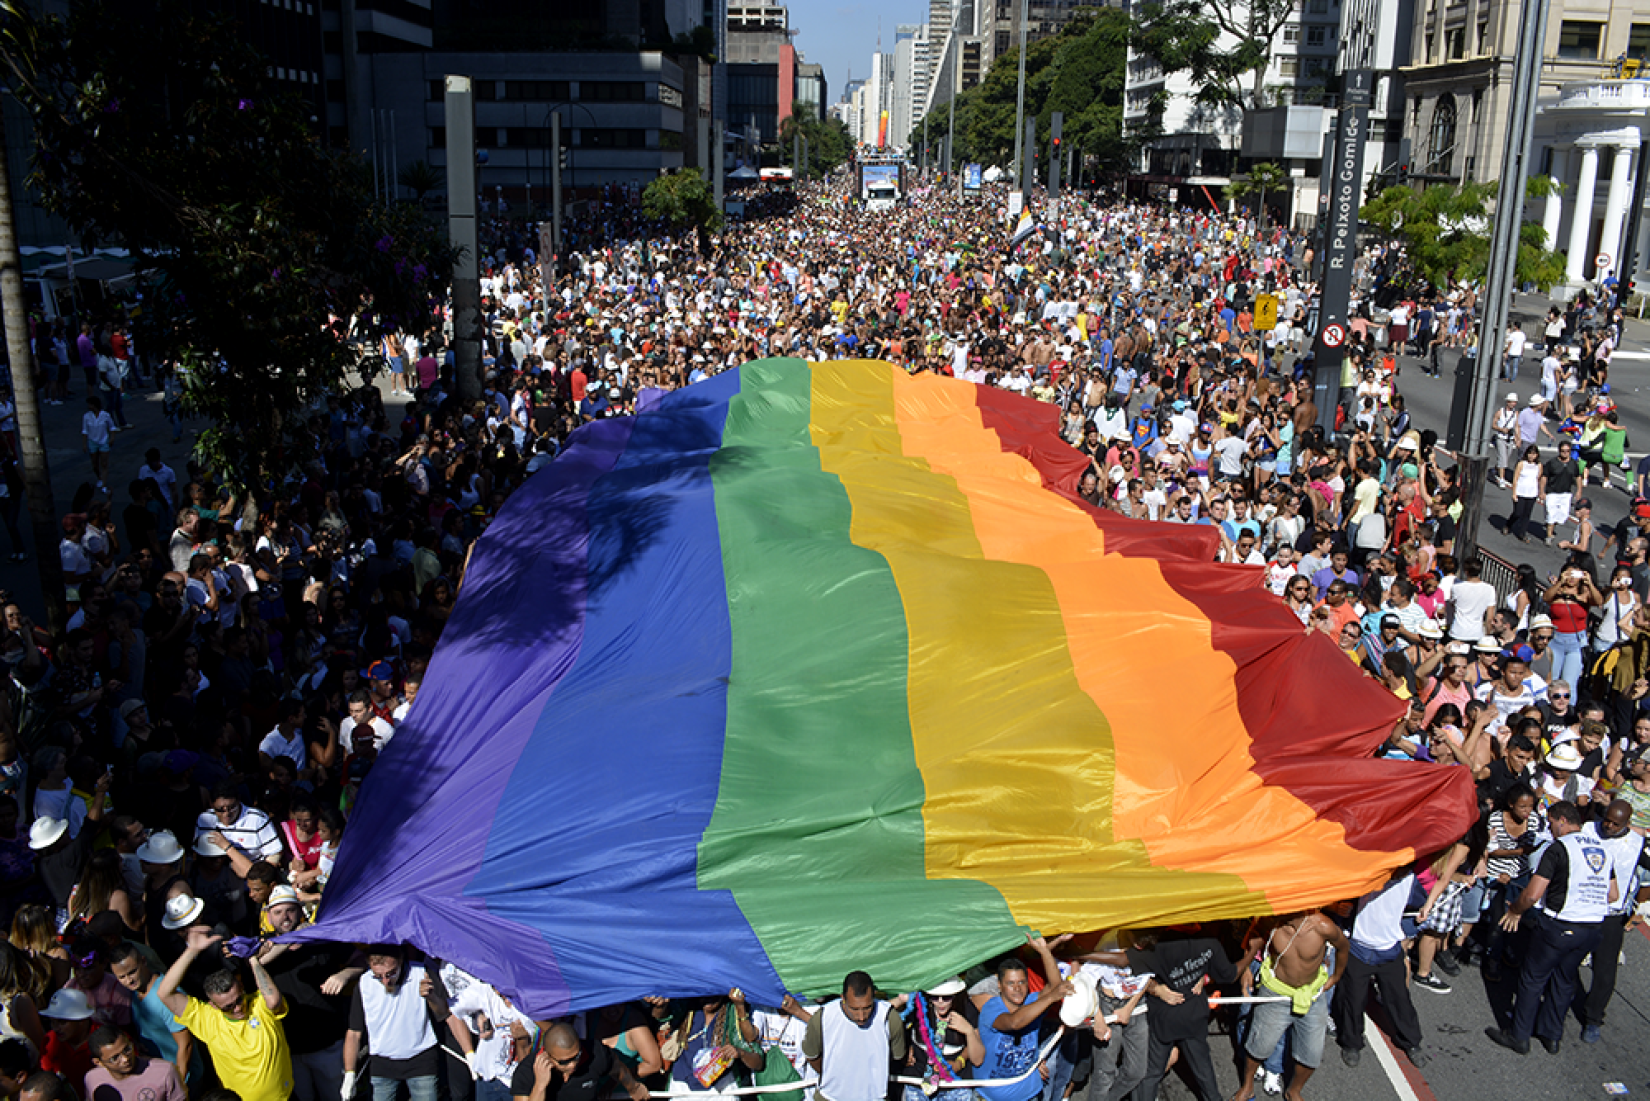 A Livres & Iguais foi lançada no Brasil em 2014 durante a 18ª Parada do Orgulho LGBTIQ+, em parceria com a Prefeitura de São Paulo.